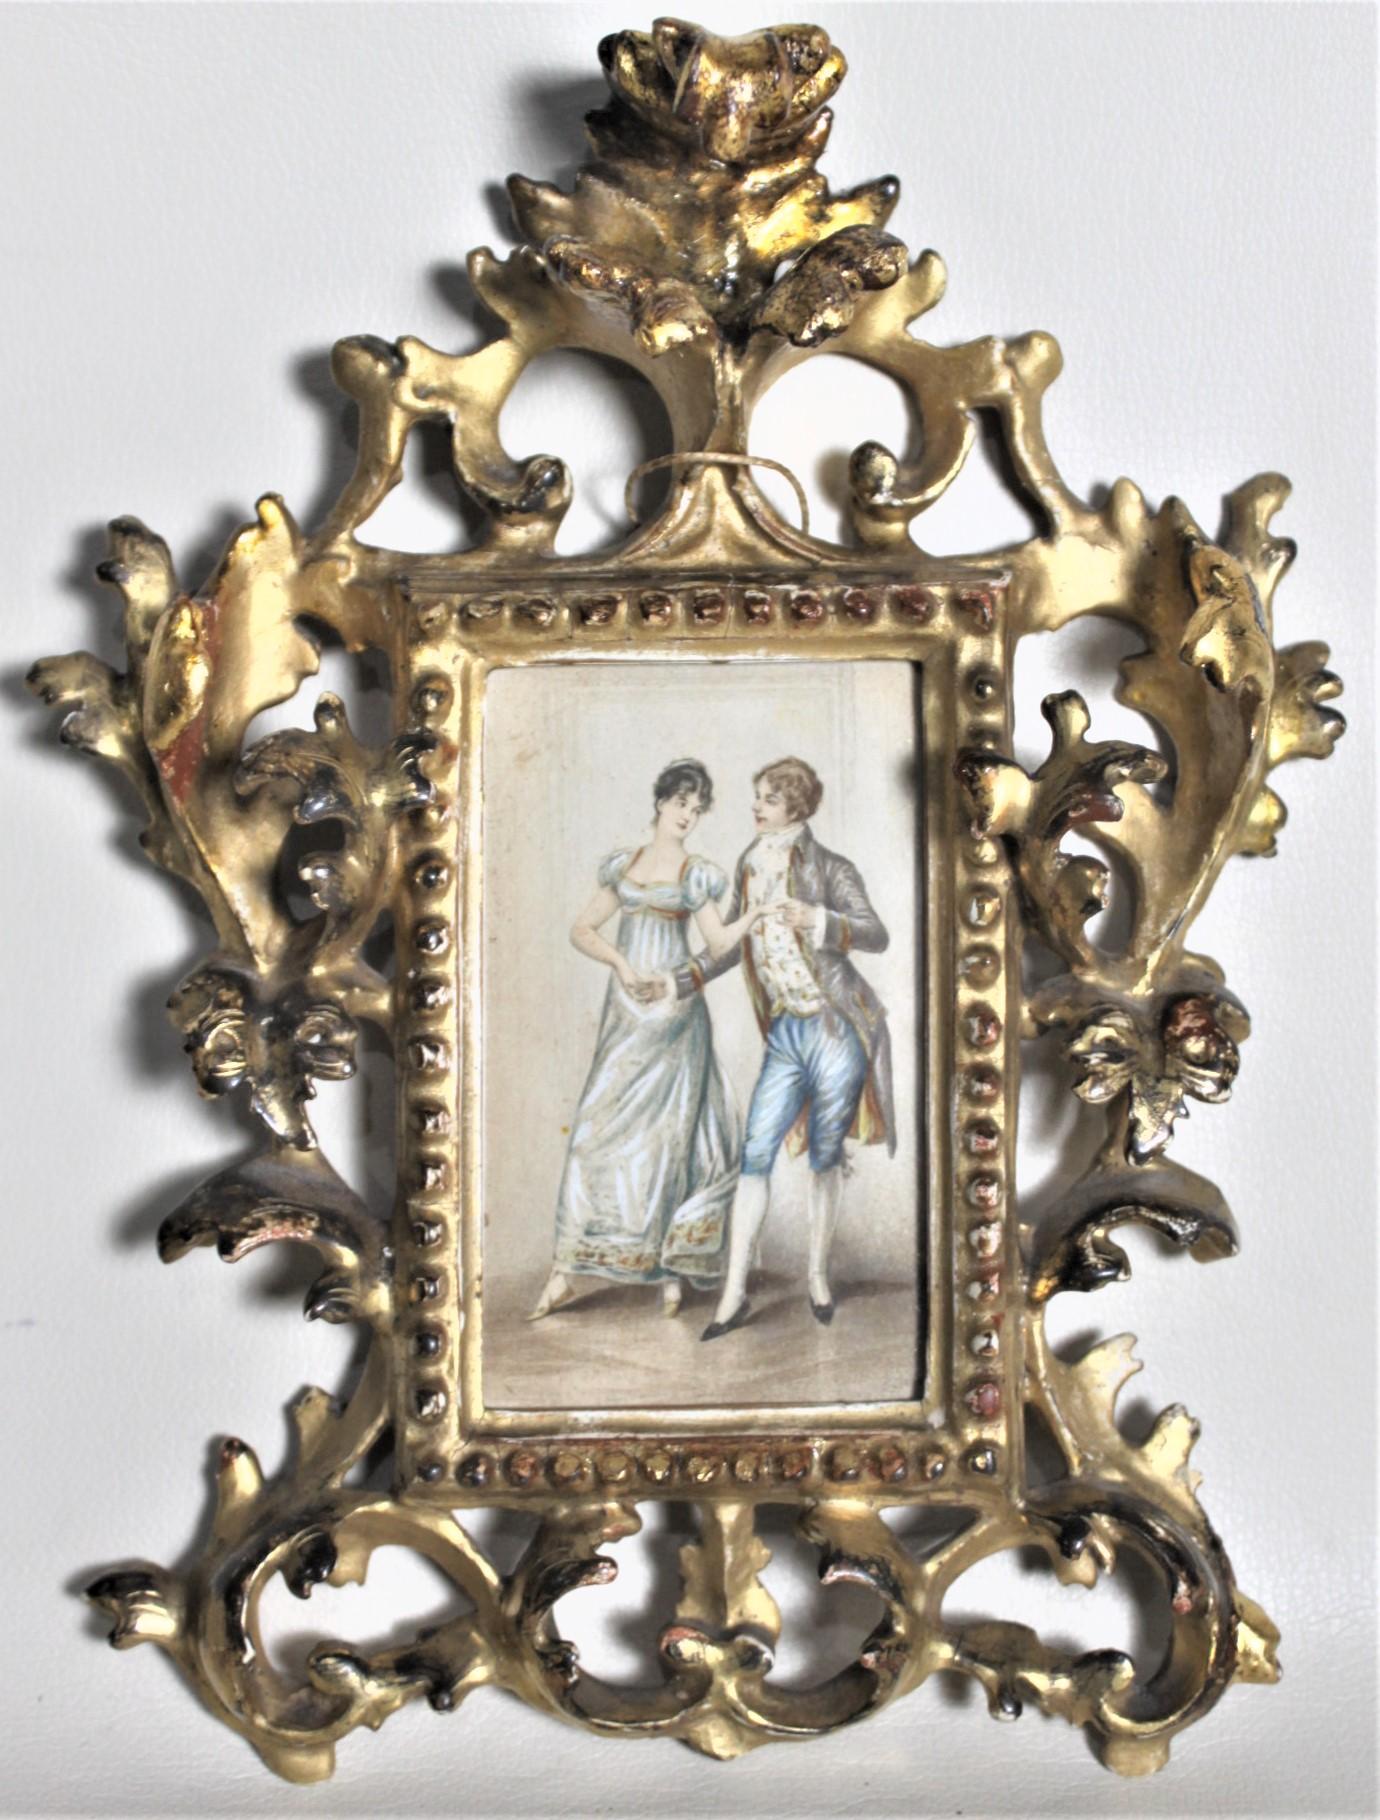 Cette paire d'aquarelles anciennes a été réalisée par un artiste inconnu, probablement de France ou d'Italie, vers 1880, dans un style Renaissance. Les tableaux représentent chacun un couple dans une salle de bal, vêtu de costumes Renaissance